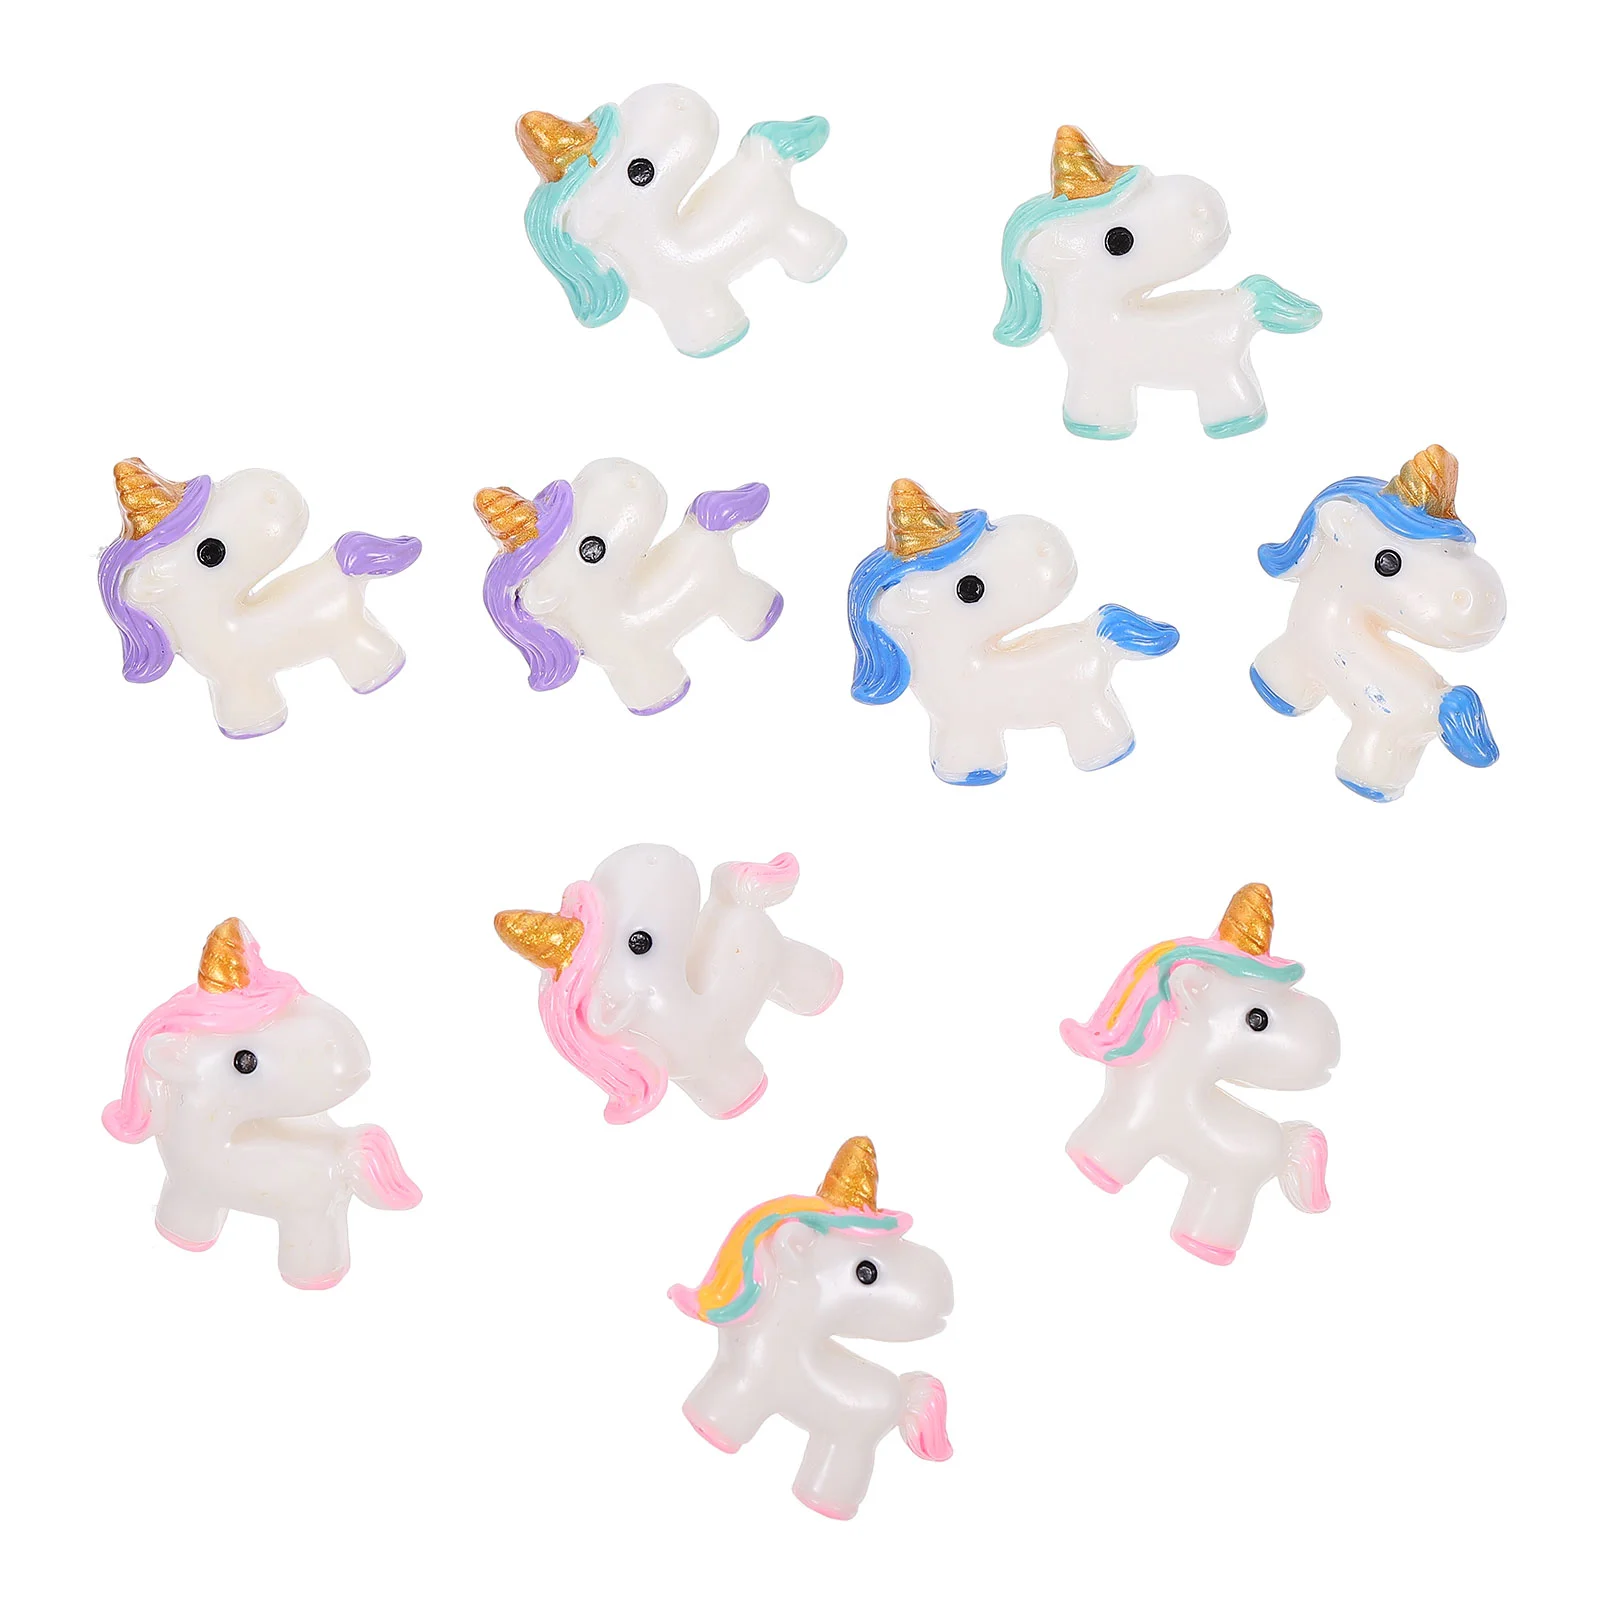 

10pcs Cartoon Adorable Unicorn Pushpins Fixed Photo Memo Paper Note Pushpins